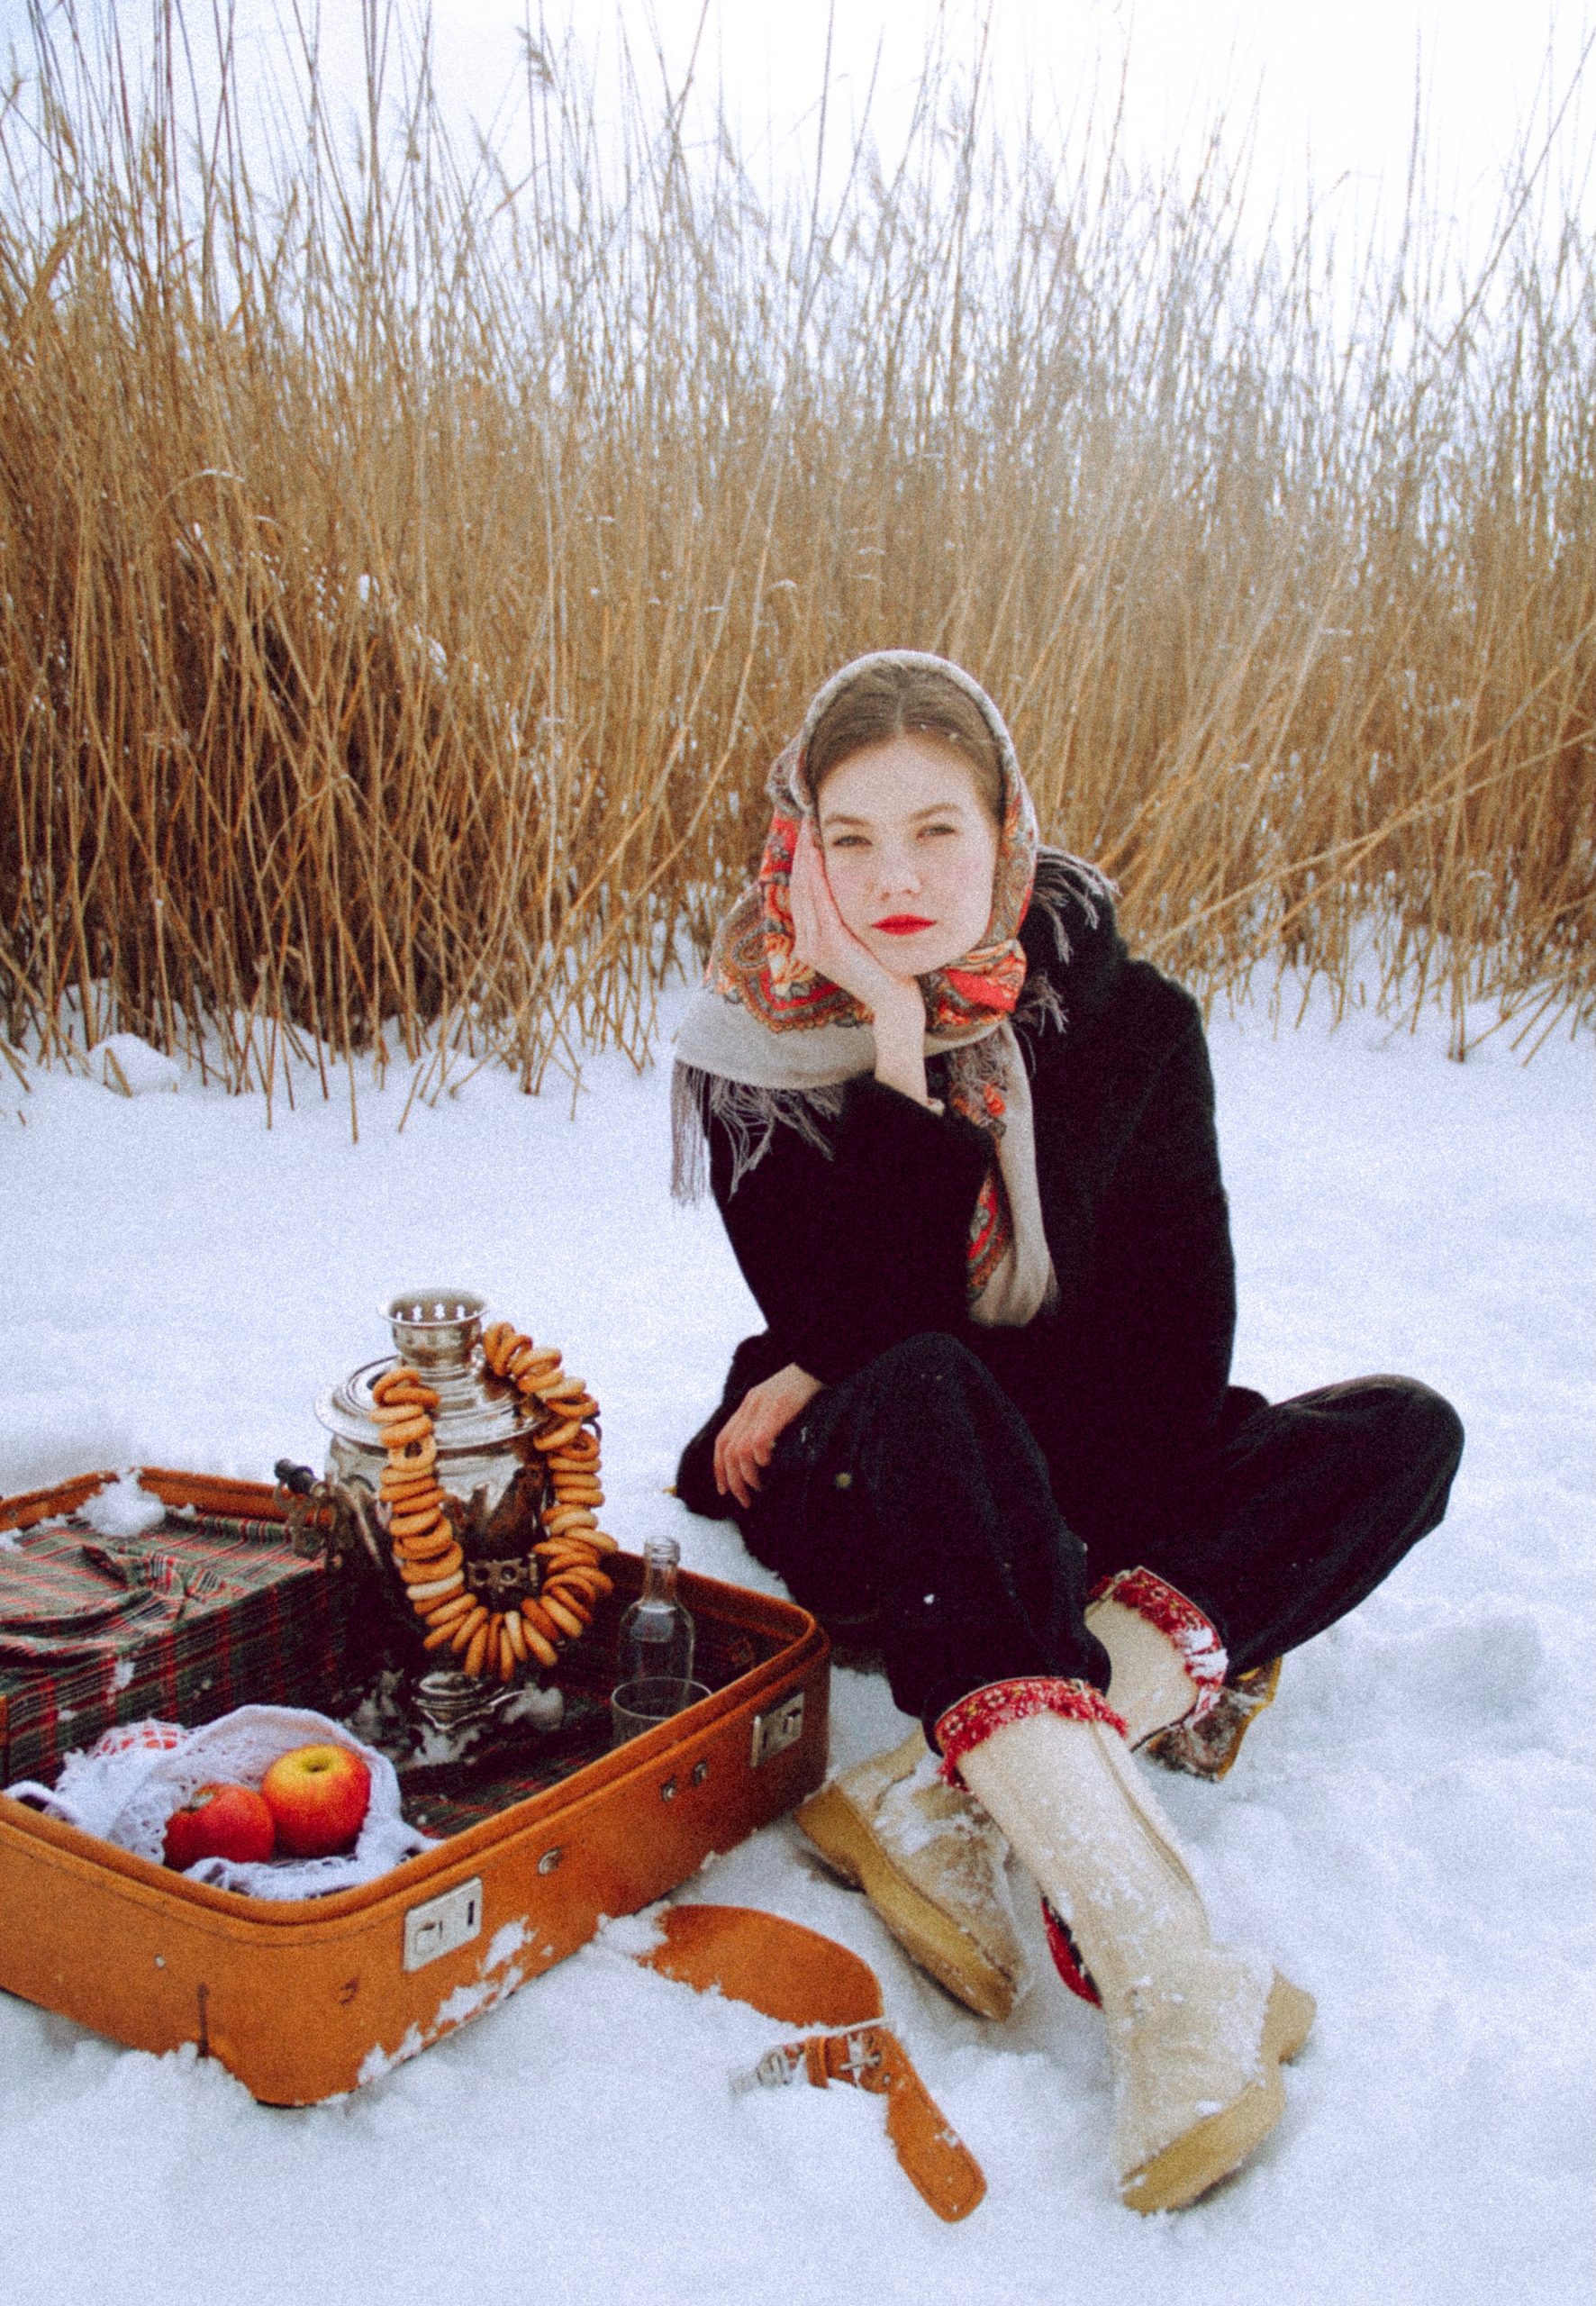 winter picnic for a cheap toronto date idea